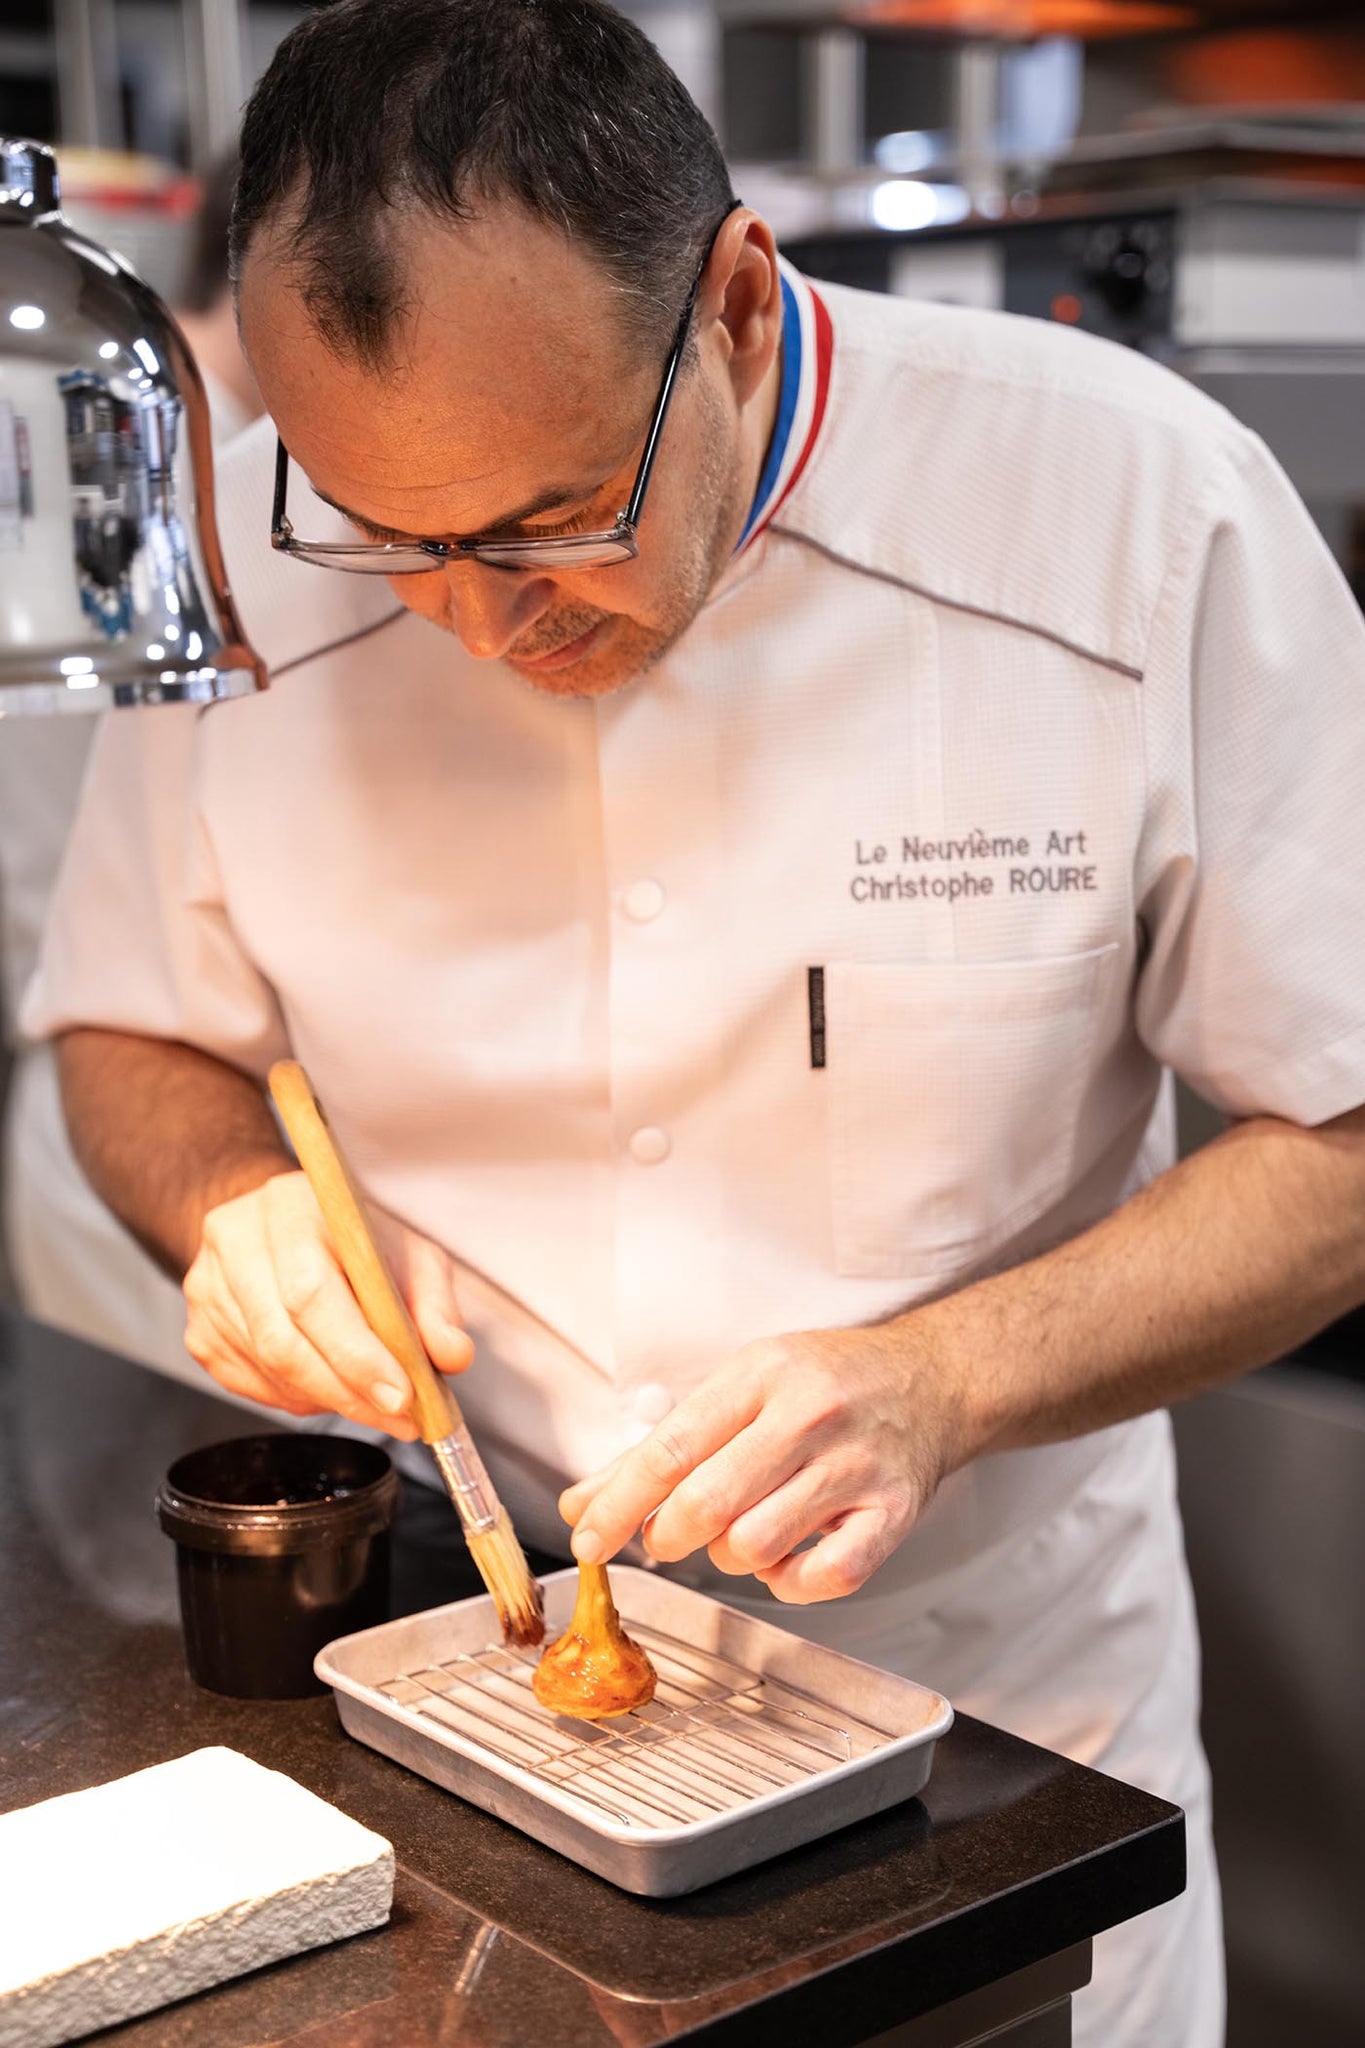 Le Chef Christophe Roure dans son restaurant Le Neuvième Art à Lyon